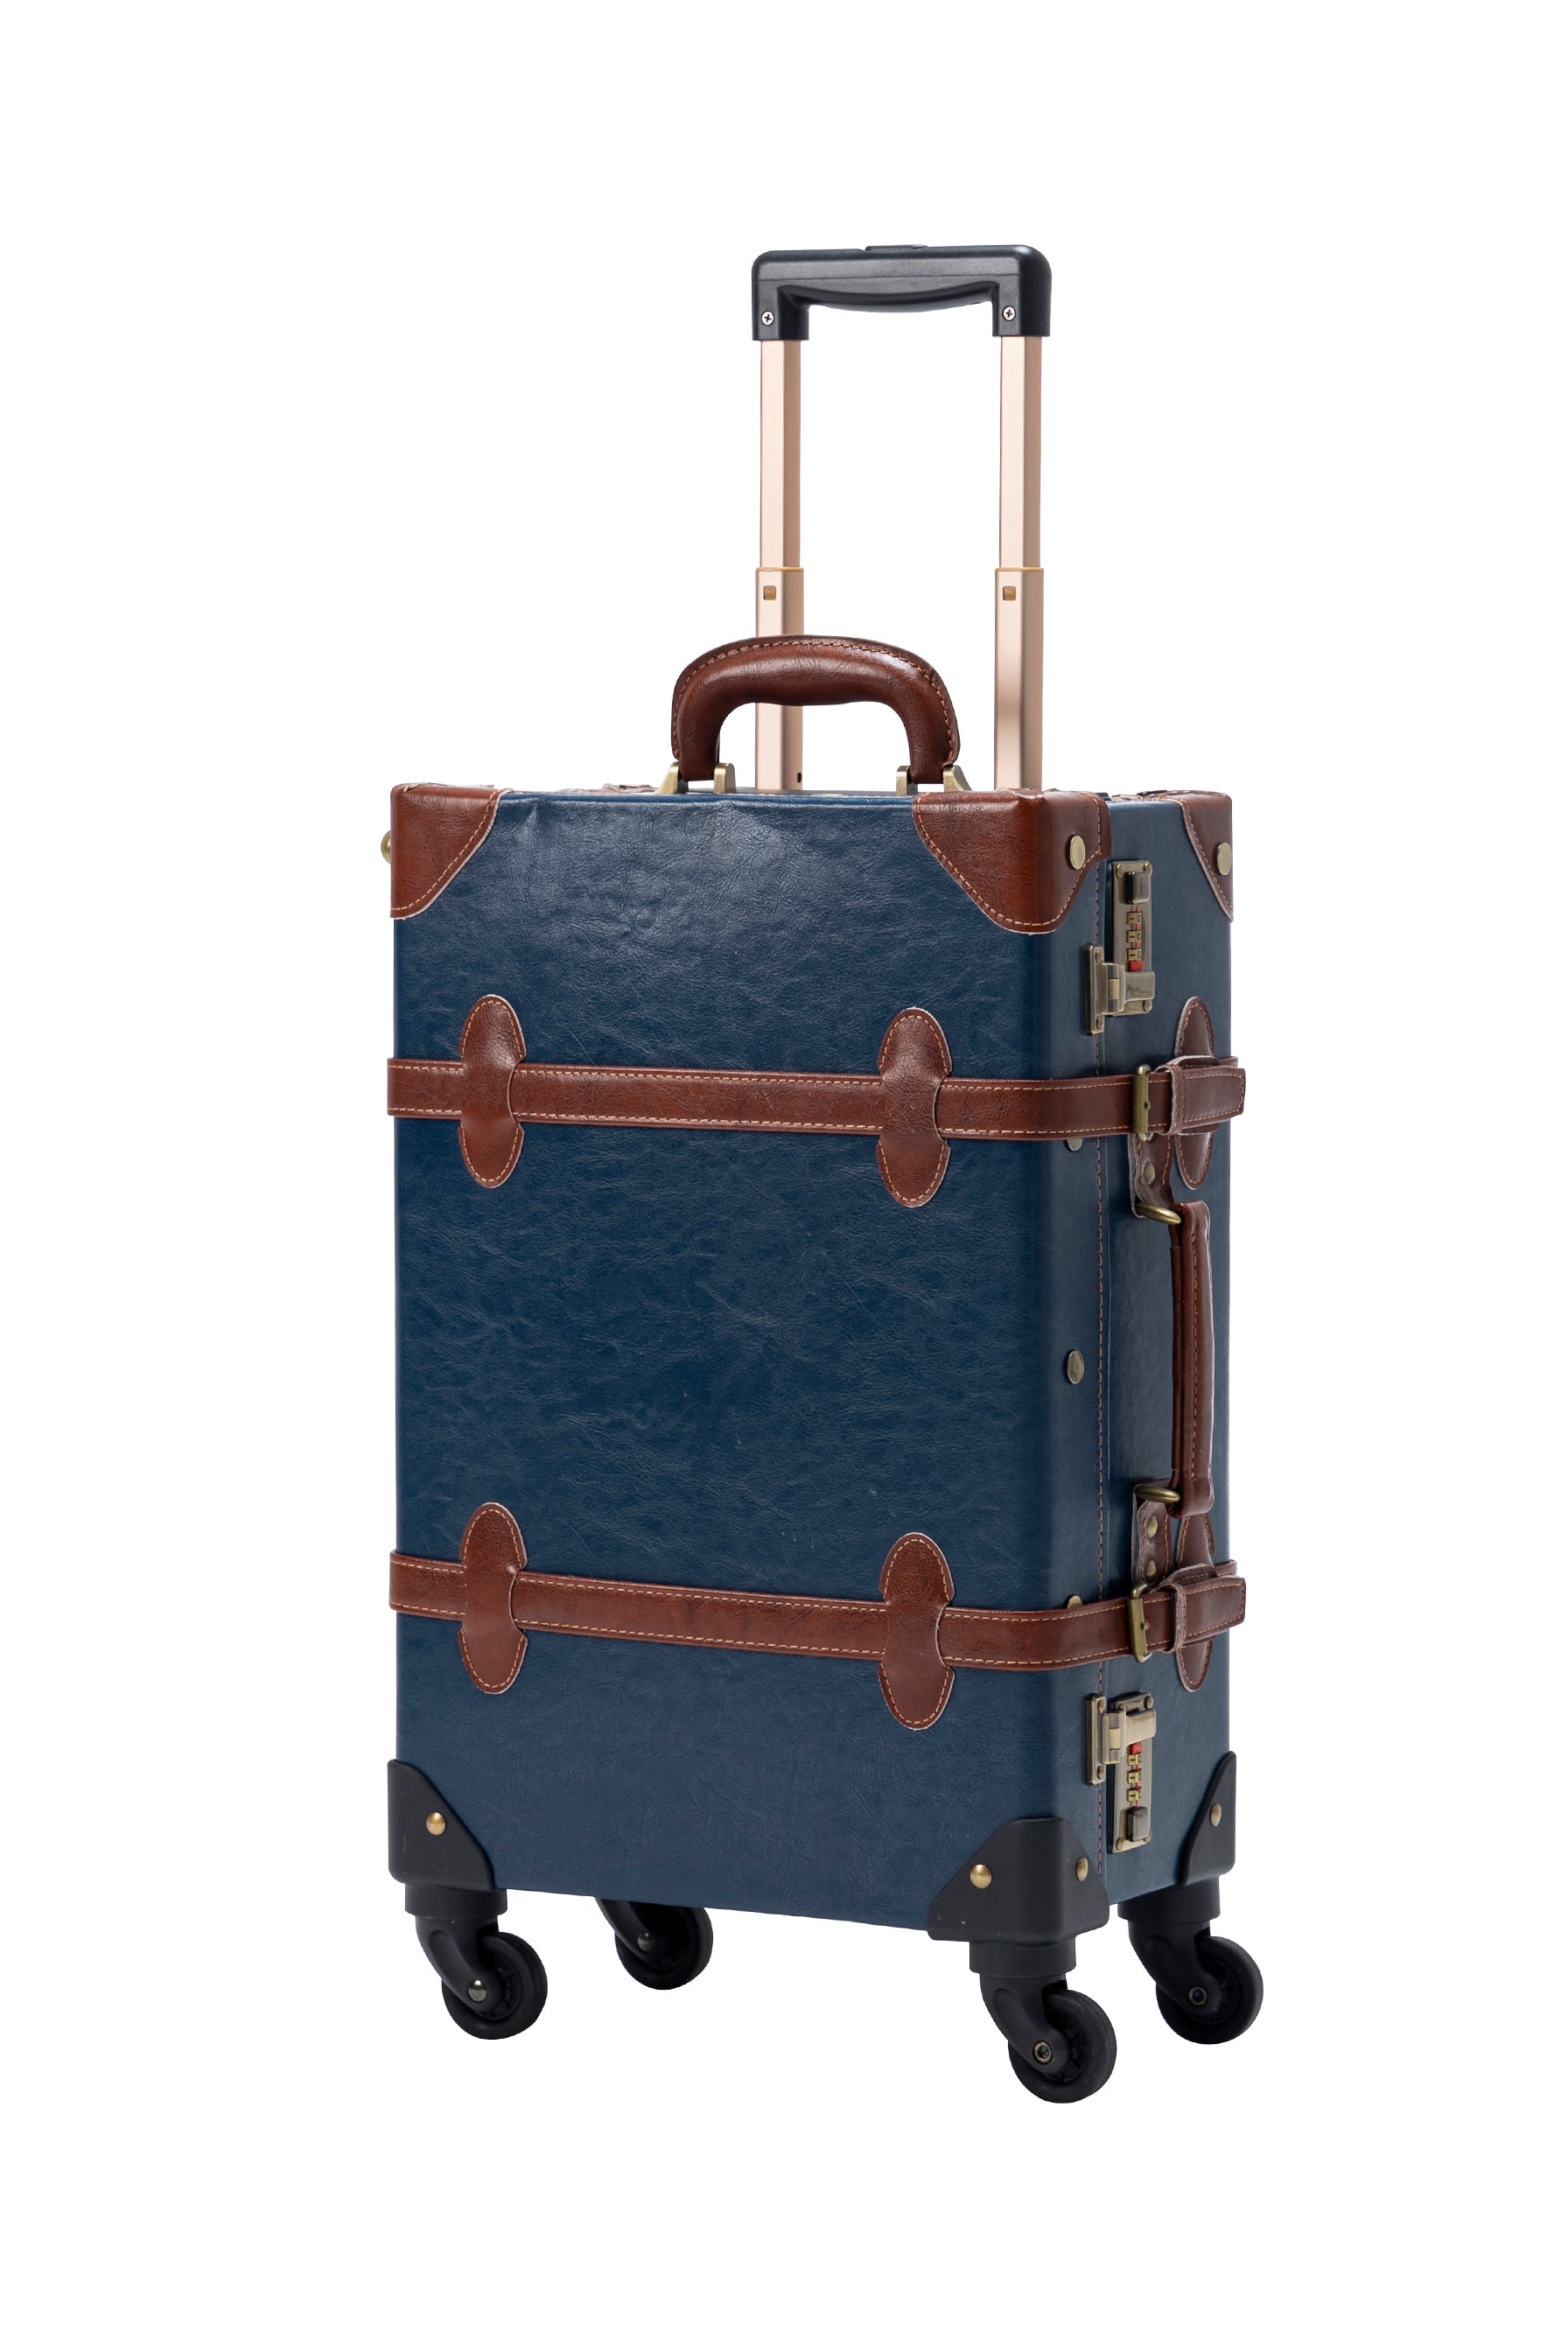 SarahFace Spinner Suitcase - Navy Blue's